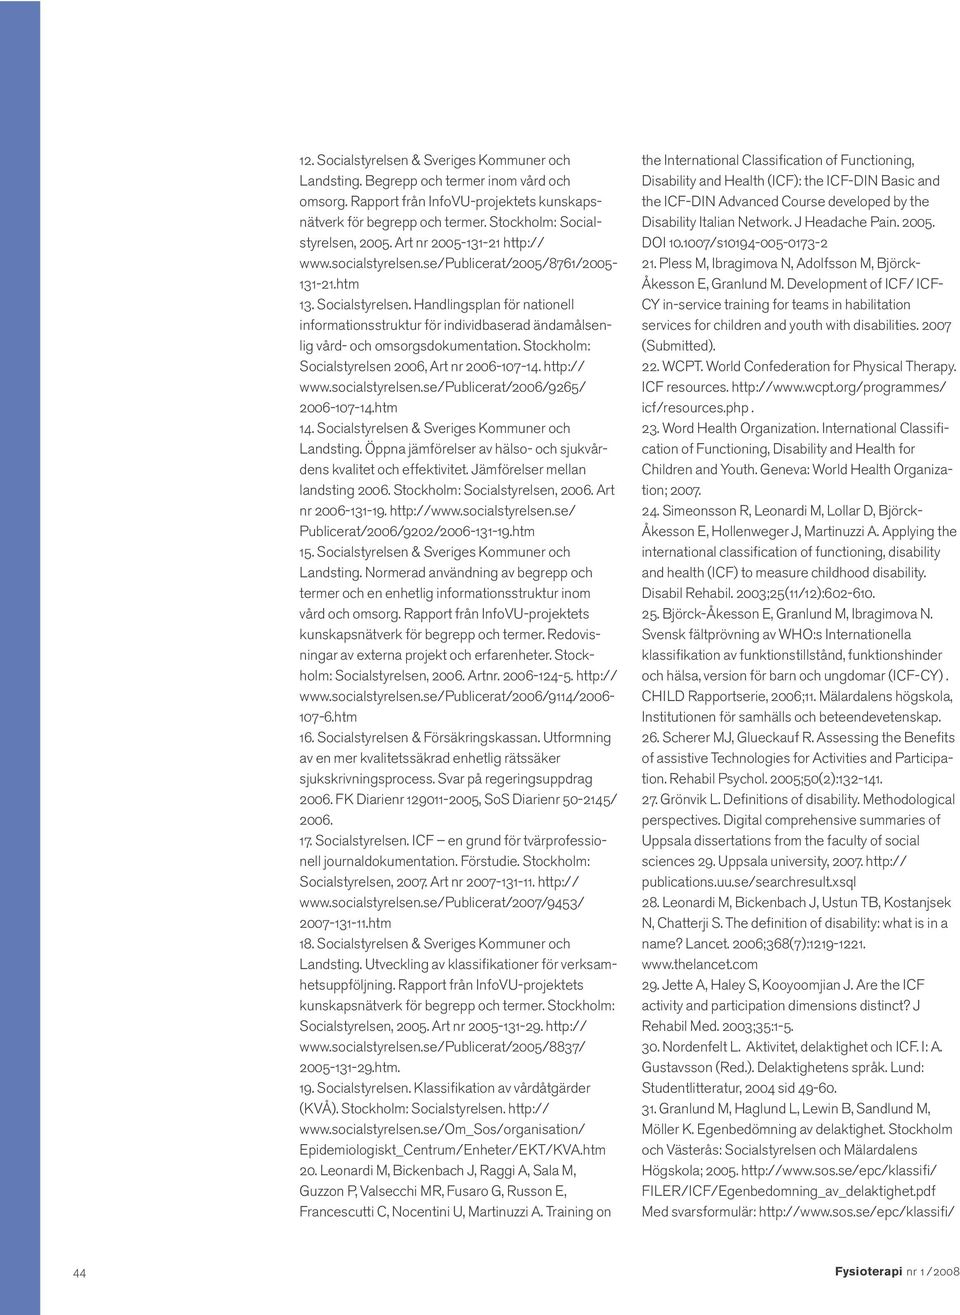 Handlingsplan för nationell informationsstruktur för individbaserad ändamålsenlig vård- och omsorgsdokumentation. Stockholm: Socialstyrelsen 2006, Art nr 2006-107-14. http:// www.socialstyrelsen.